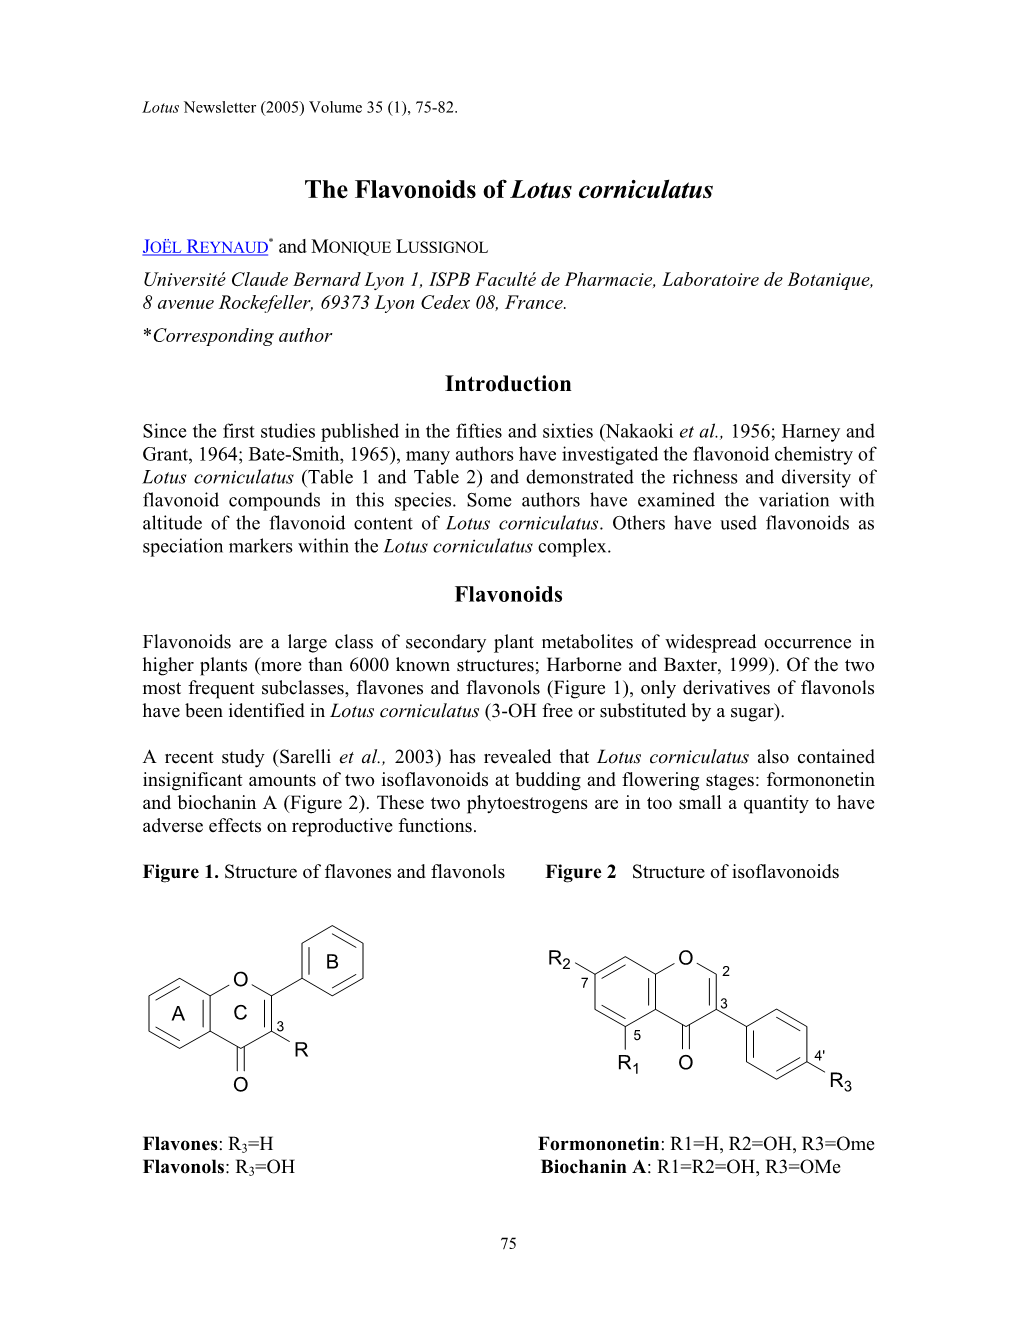 The Flavonoids of Lotus Corniculatus